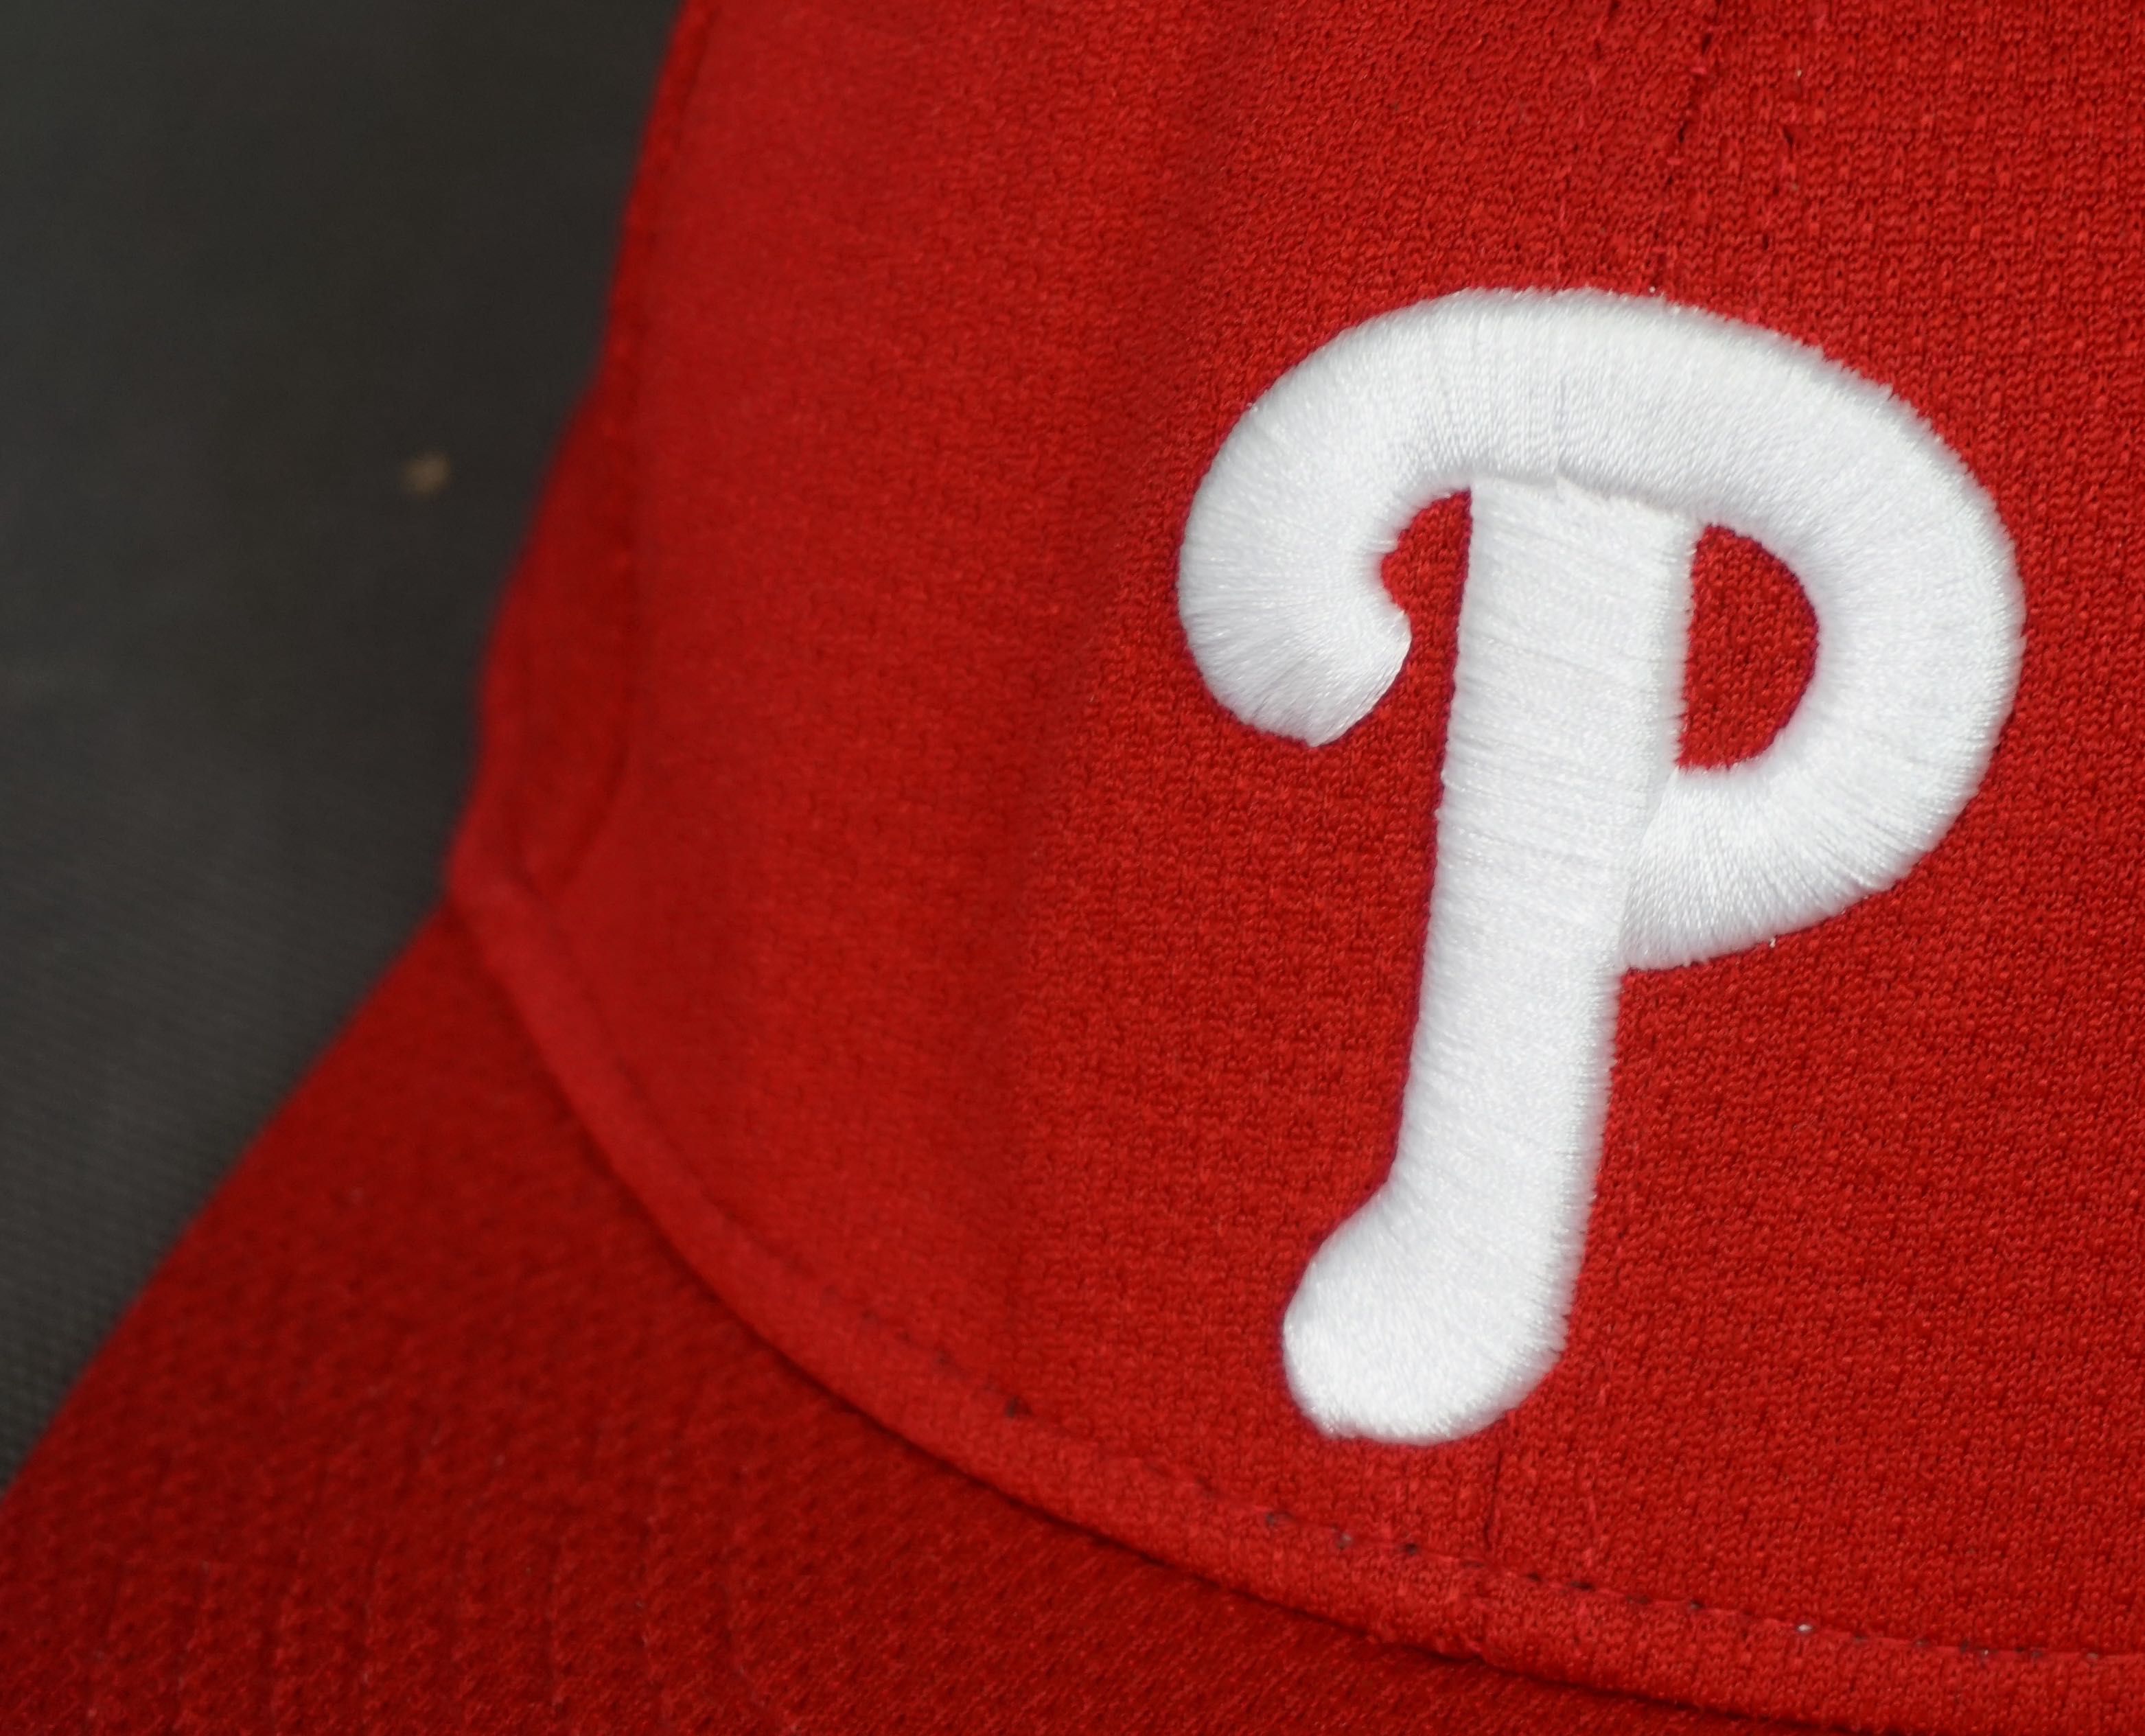 Czapka dziecięca Philadelphia bejsbolowa snap bag